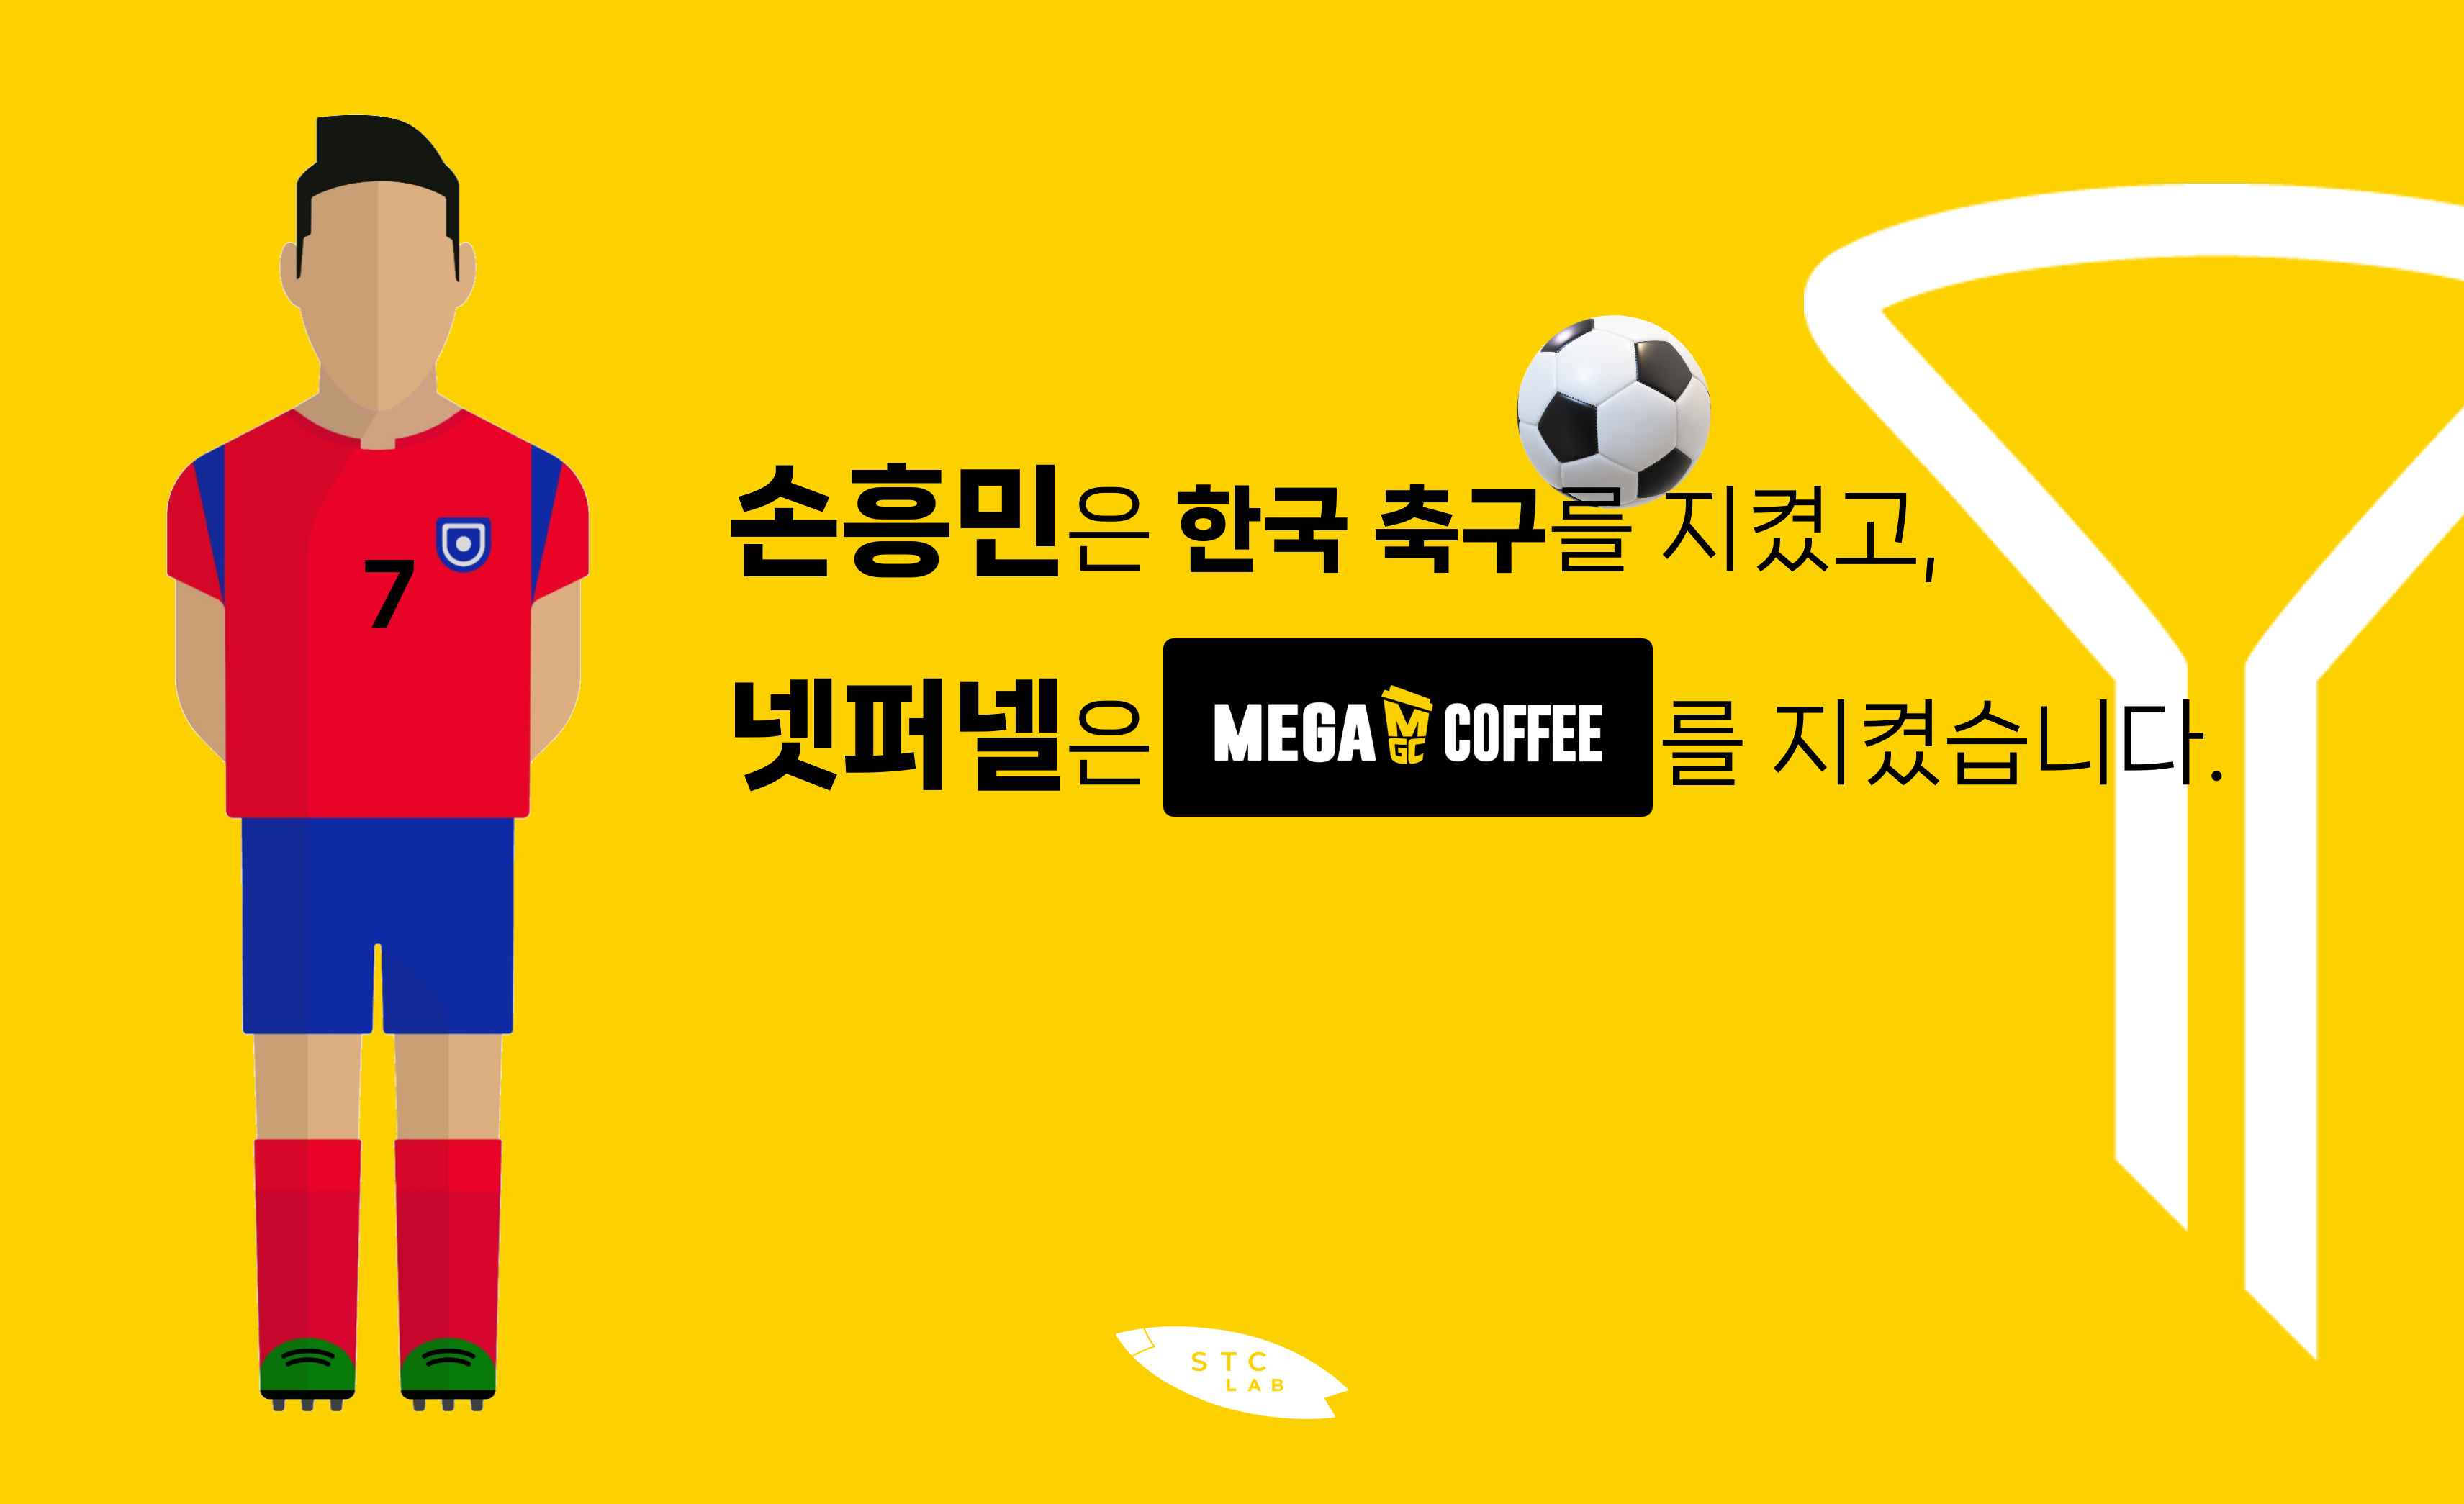 그렇게 손흥민은 한국 축구를 지켰고&#44; 같은 시각 넷퍼넬(NetFUNNEL)은 메가MGC커피를 지켰습니다.